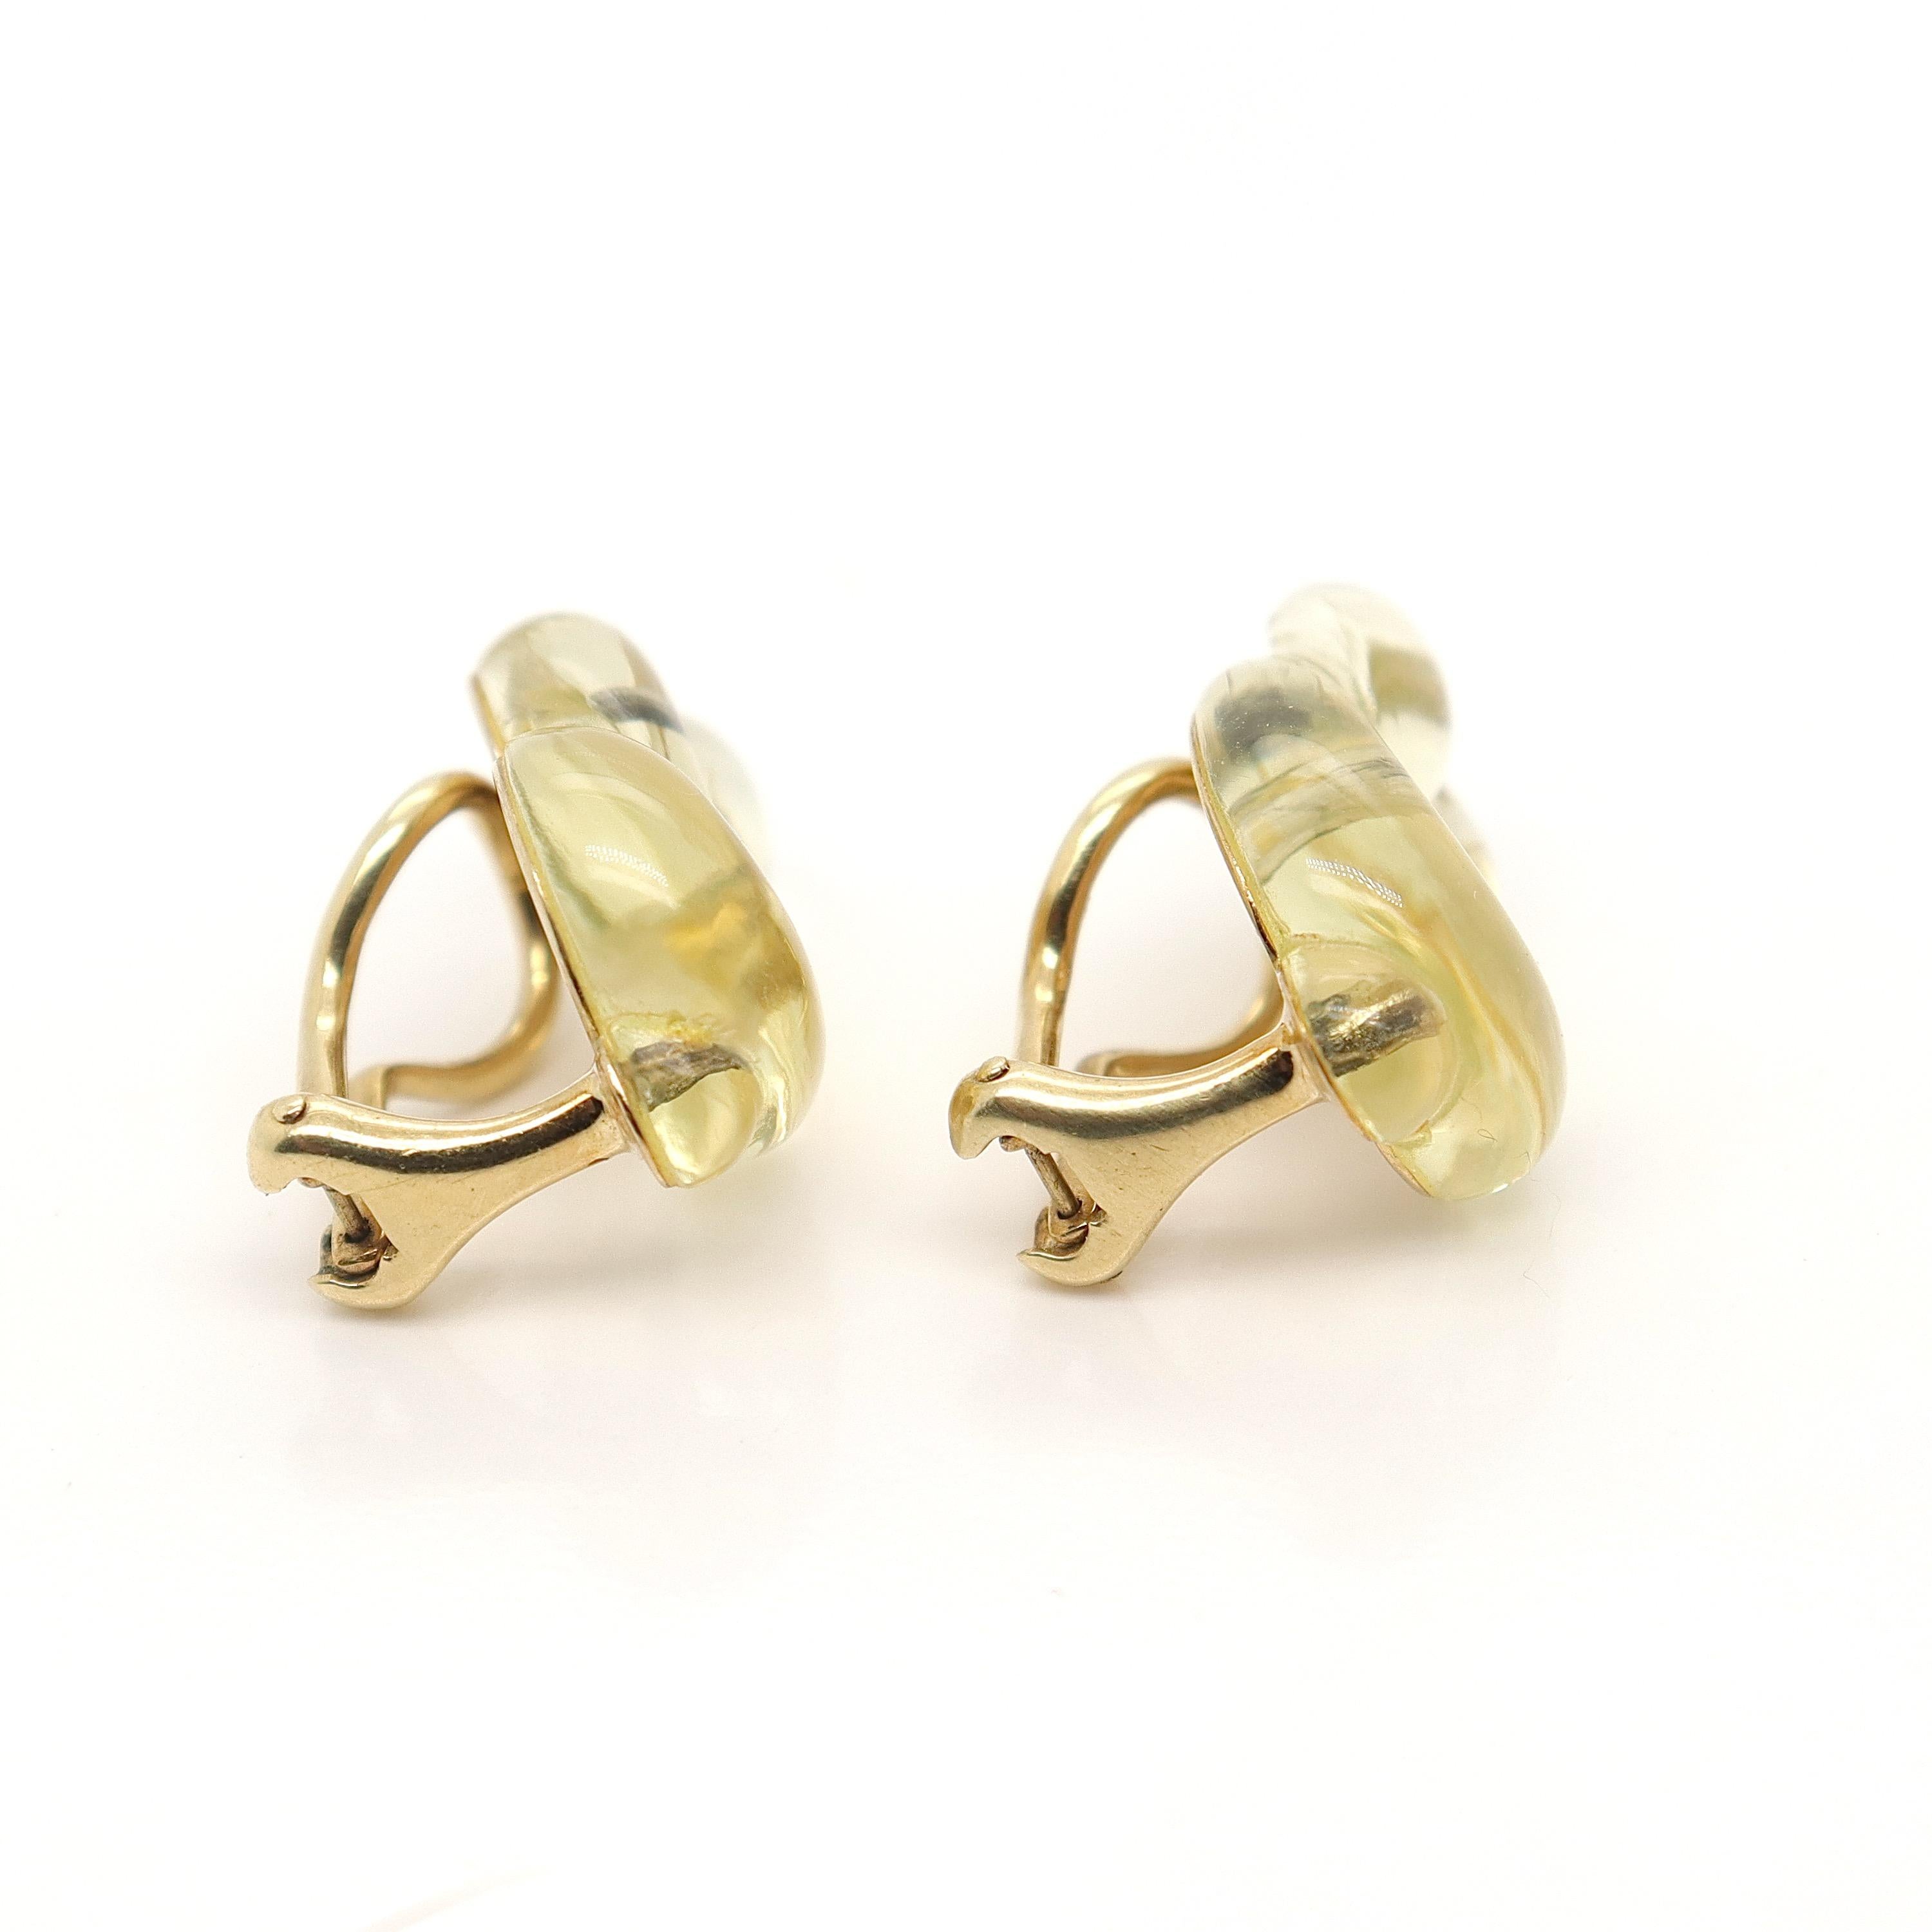 Pair Tiffany & Co 18K Gold & Glass Modern Pretzel Earrings by Angela Cummings For Sale 2